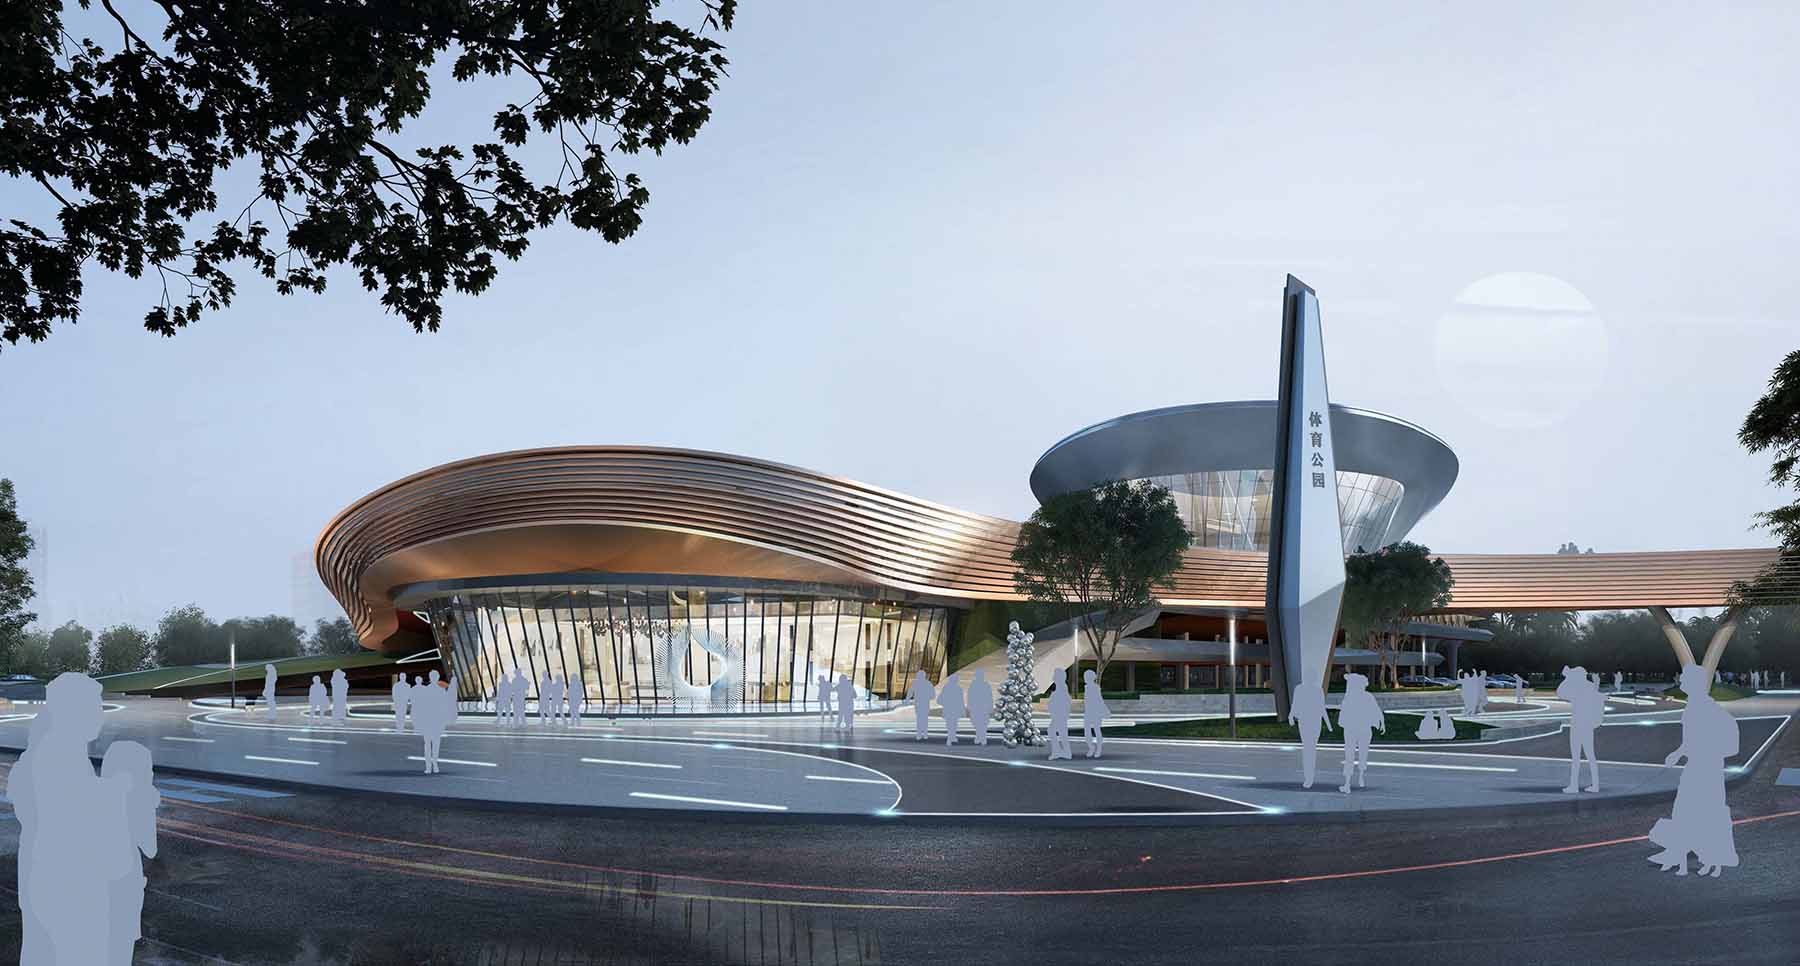 A Design Award winner - Dongguan Riverside Sports Center